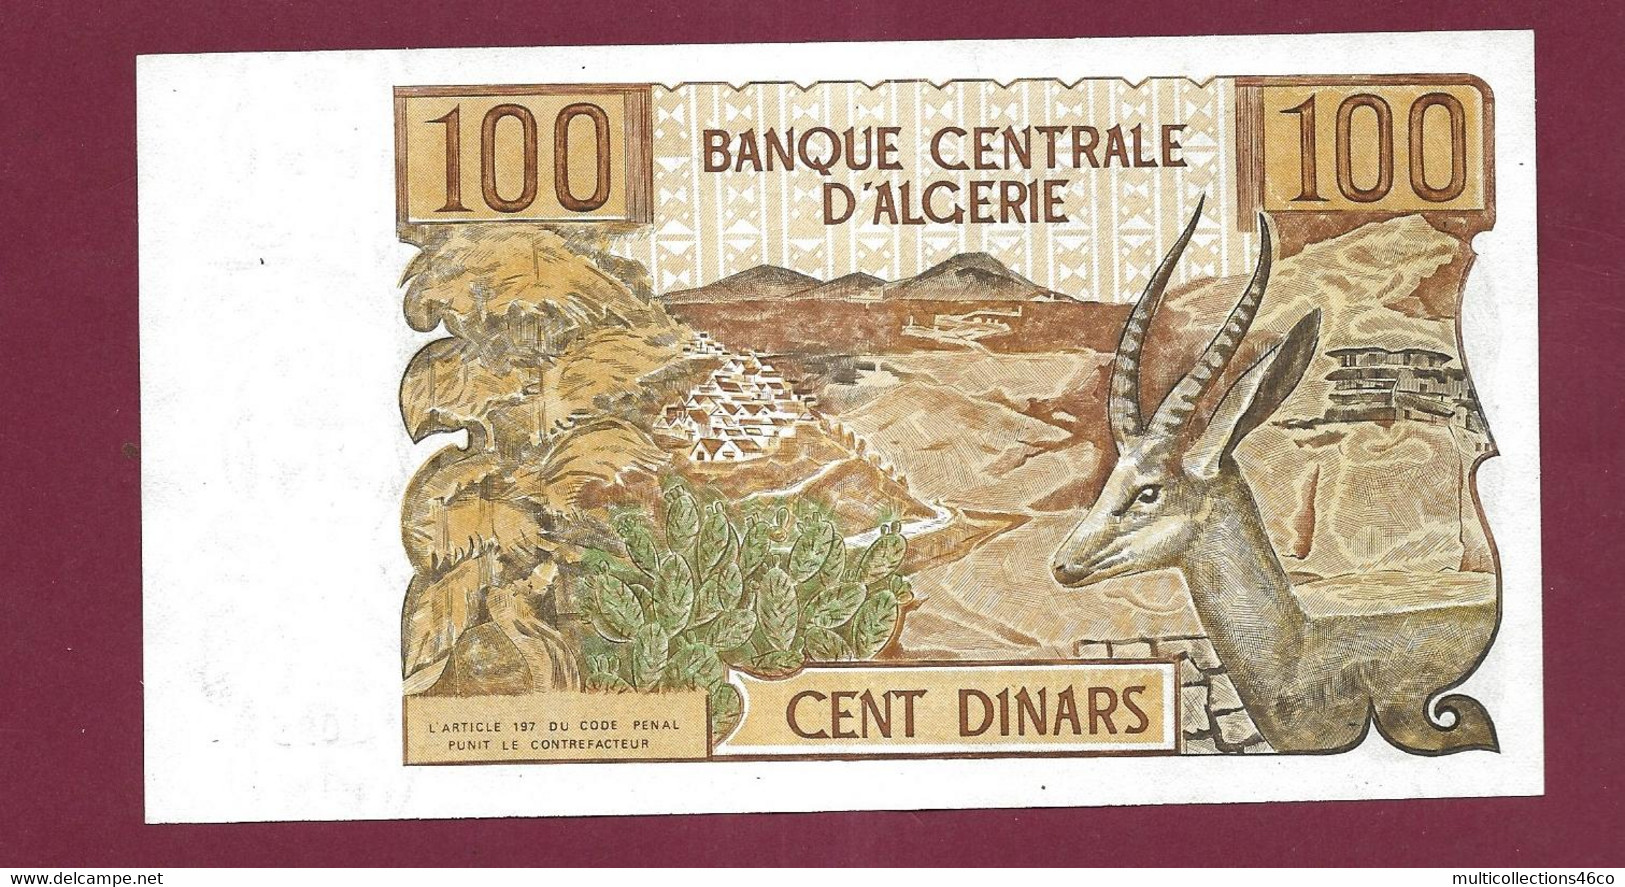 010222 - Billet BANQUE CENTRALE D'ALGERIE Cent 100 Dinars 1-11 - 1970 Neuf - Algerien